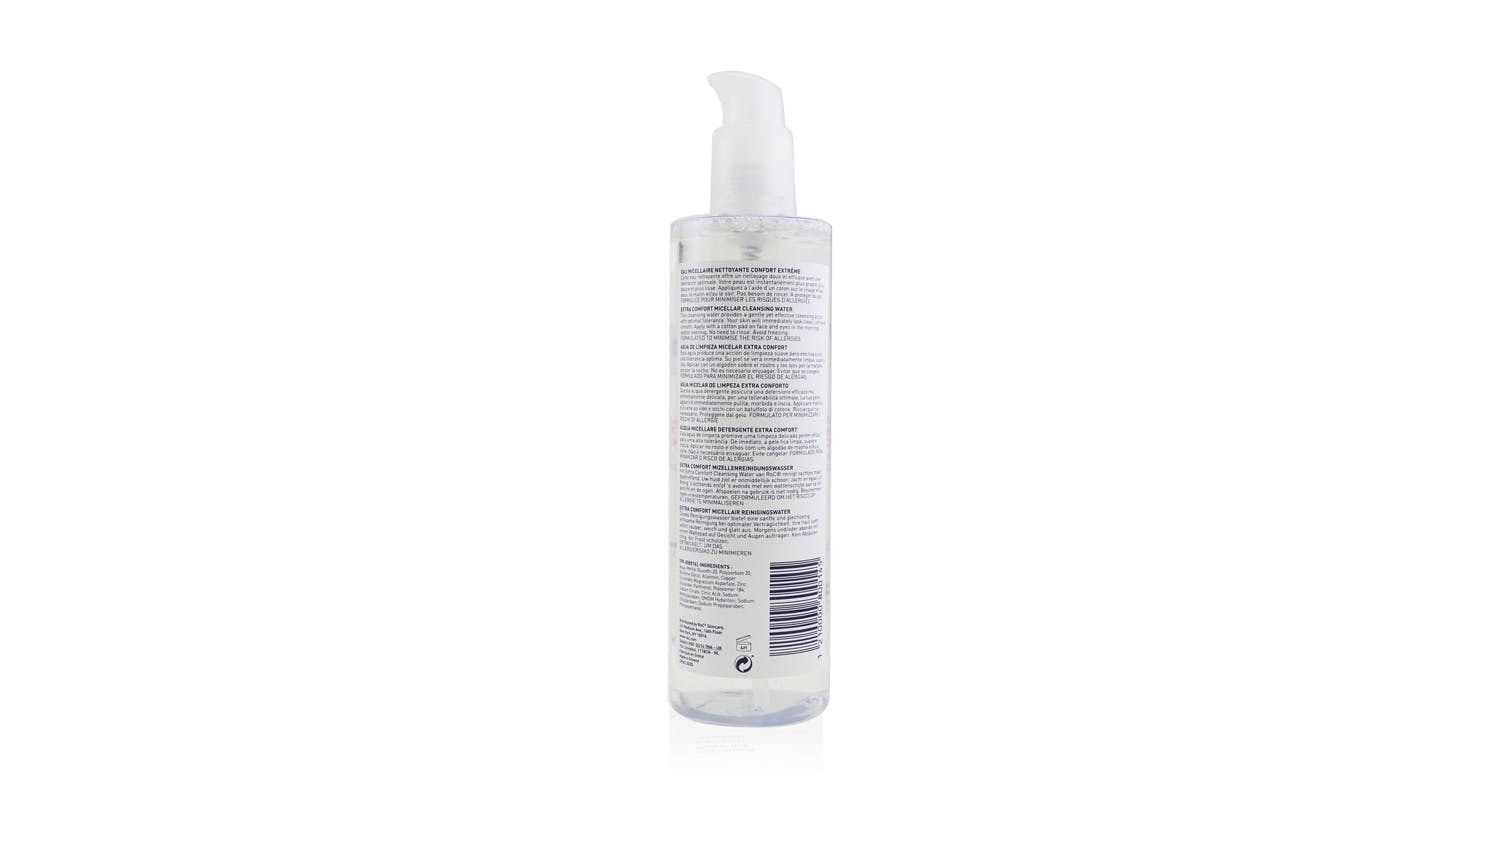 Extra Comfort Micellar Cleansing Water (Sensitive Skin, Face & Eyes) - 400ml/13.52oz